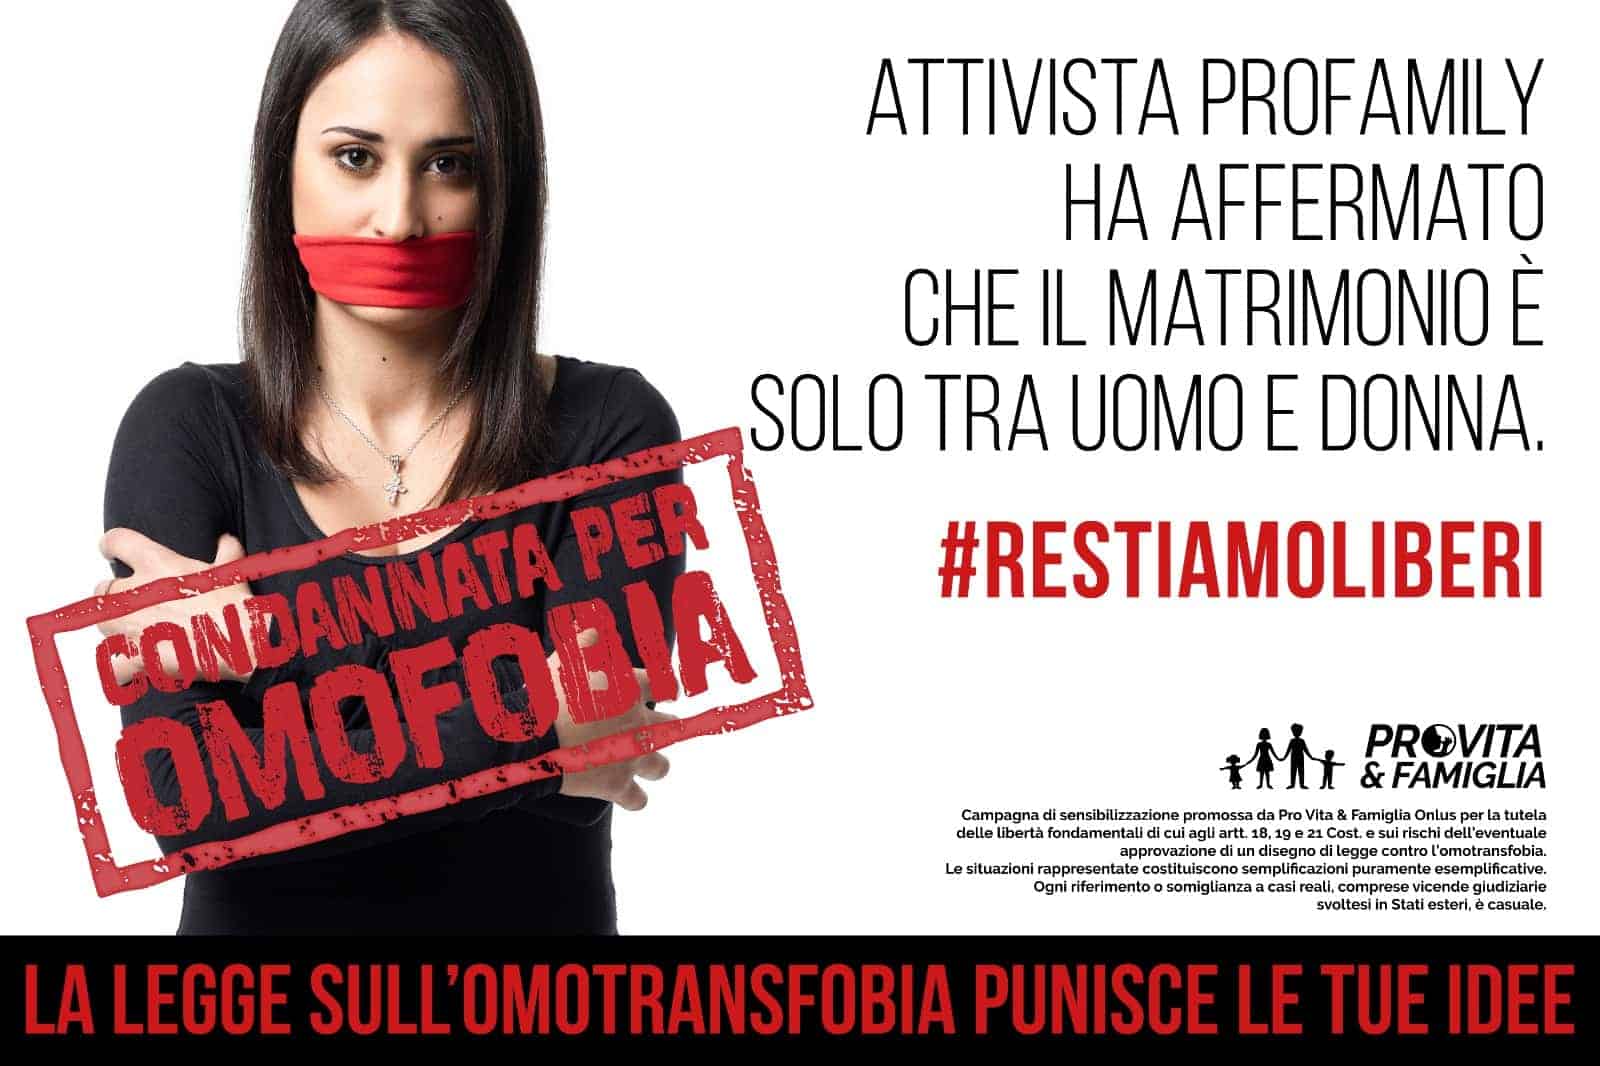 Pro Vita, ridicola campagna contro legge sull'Omofobia: "Toglie la libertà di pensiero e di parola agli italiani" - pro vita omofobia 3 - Gay.it